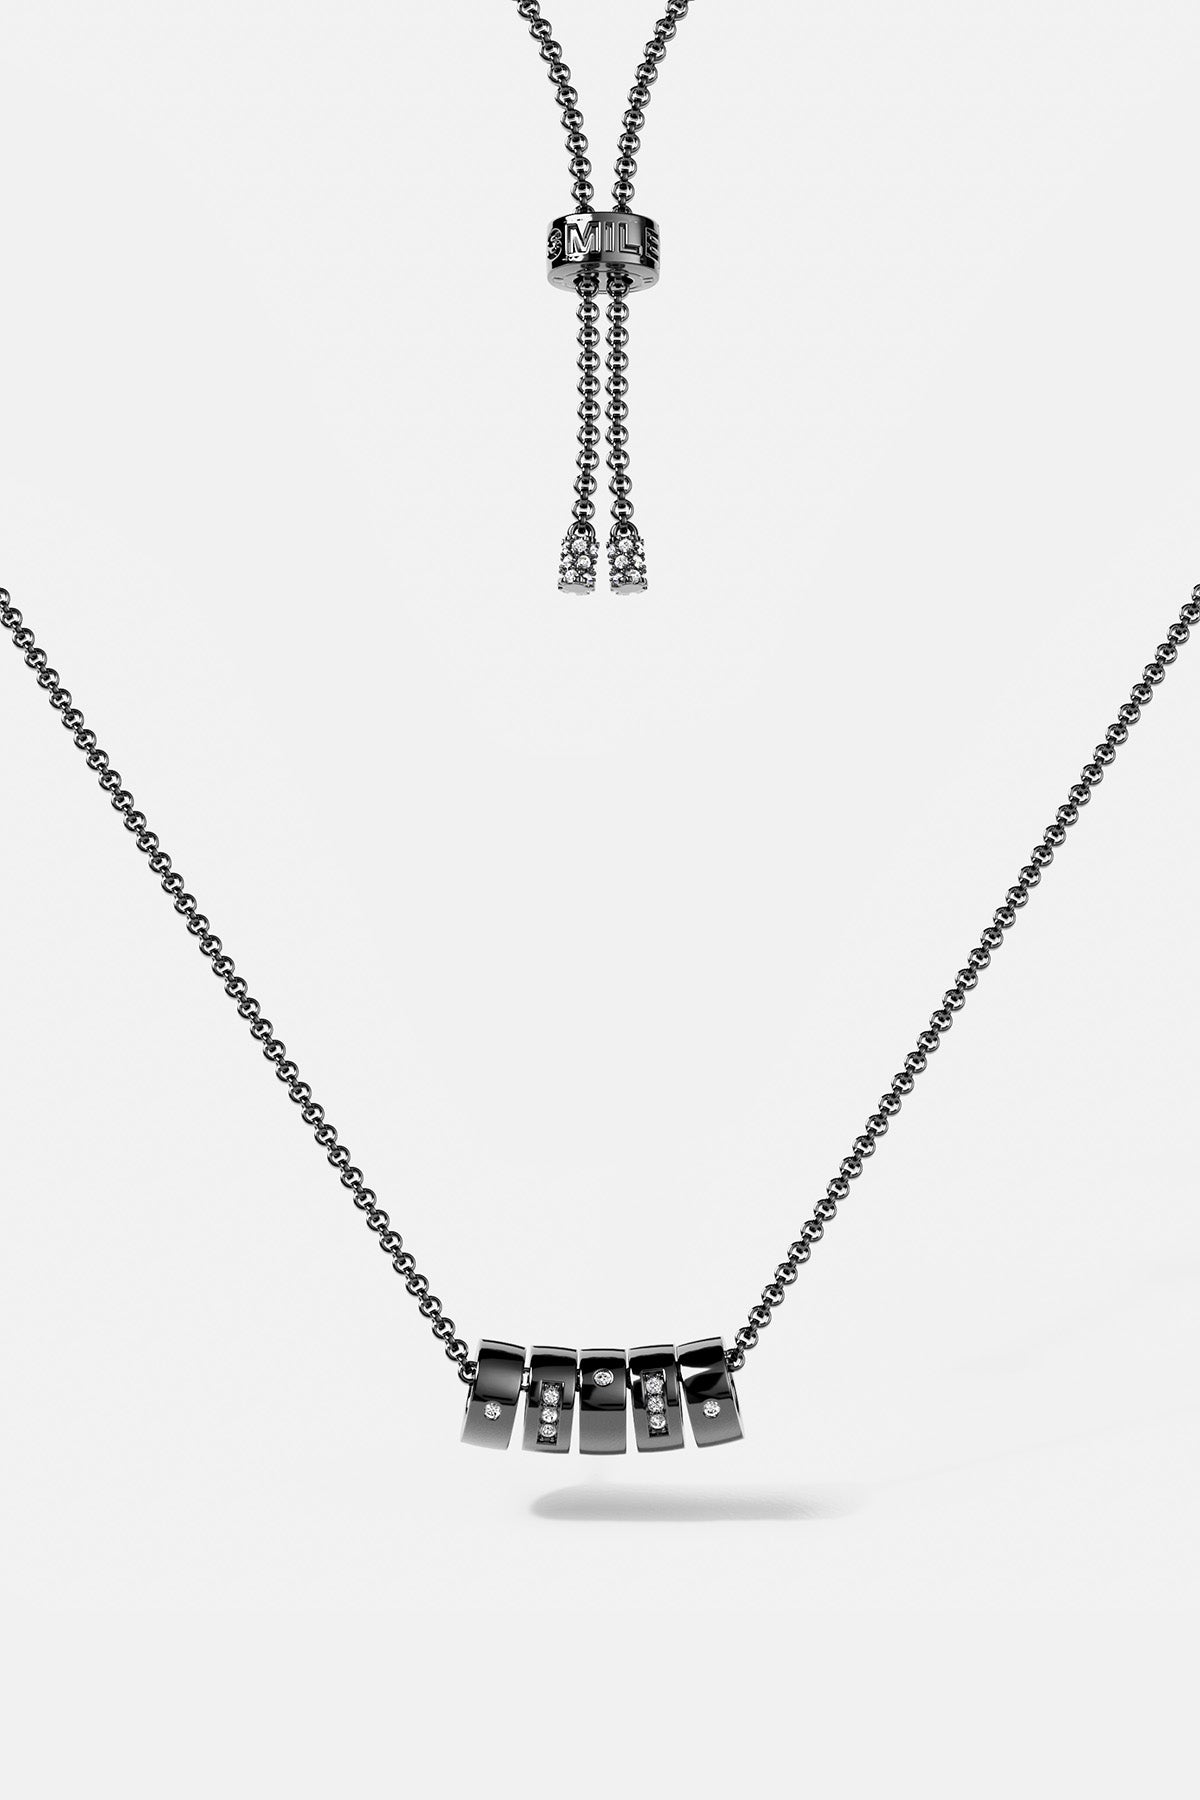 Smile Morse Code Adjustable Necklace - APM Monaco